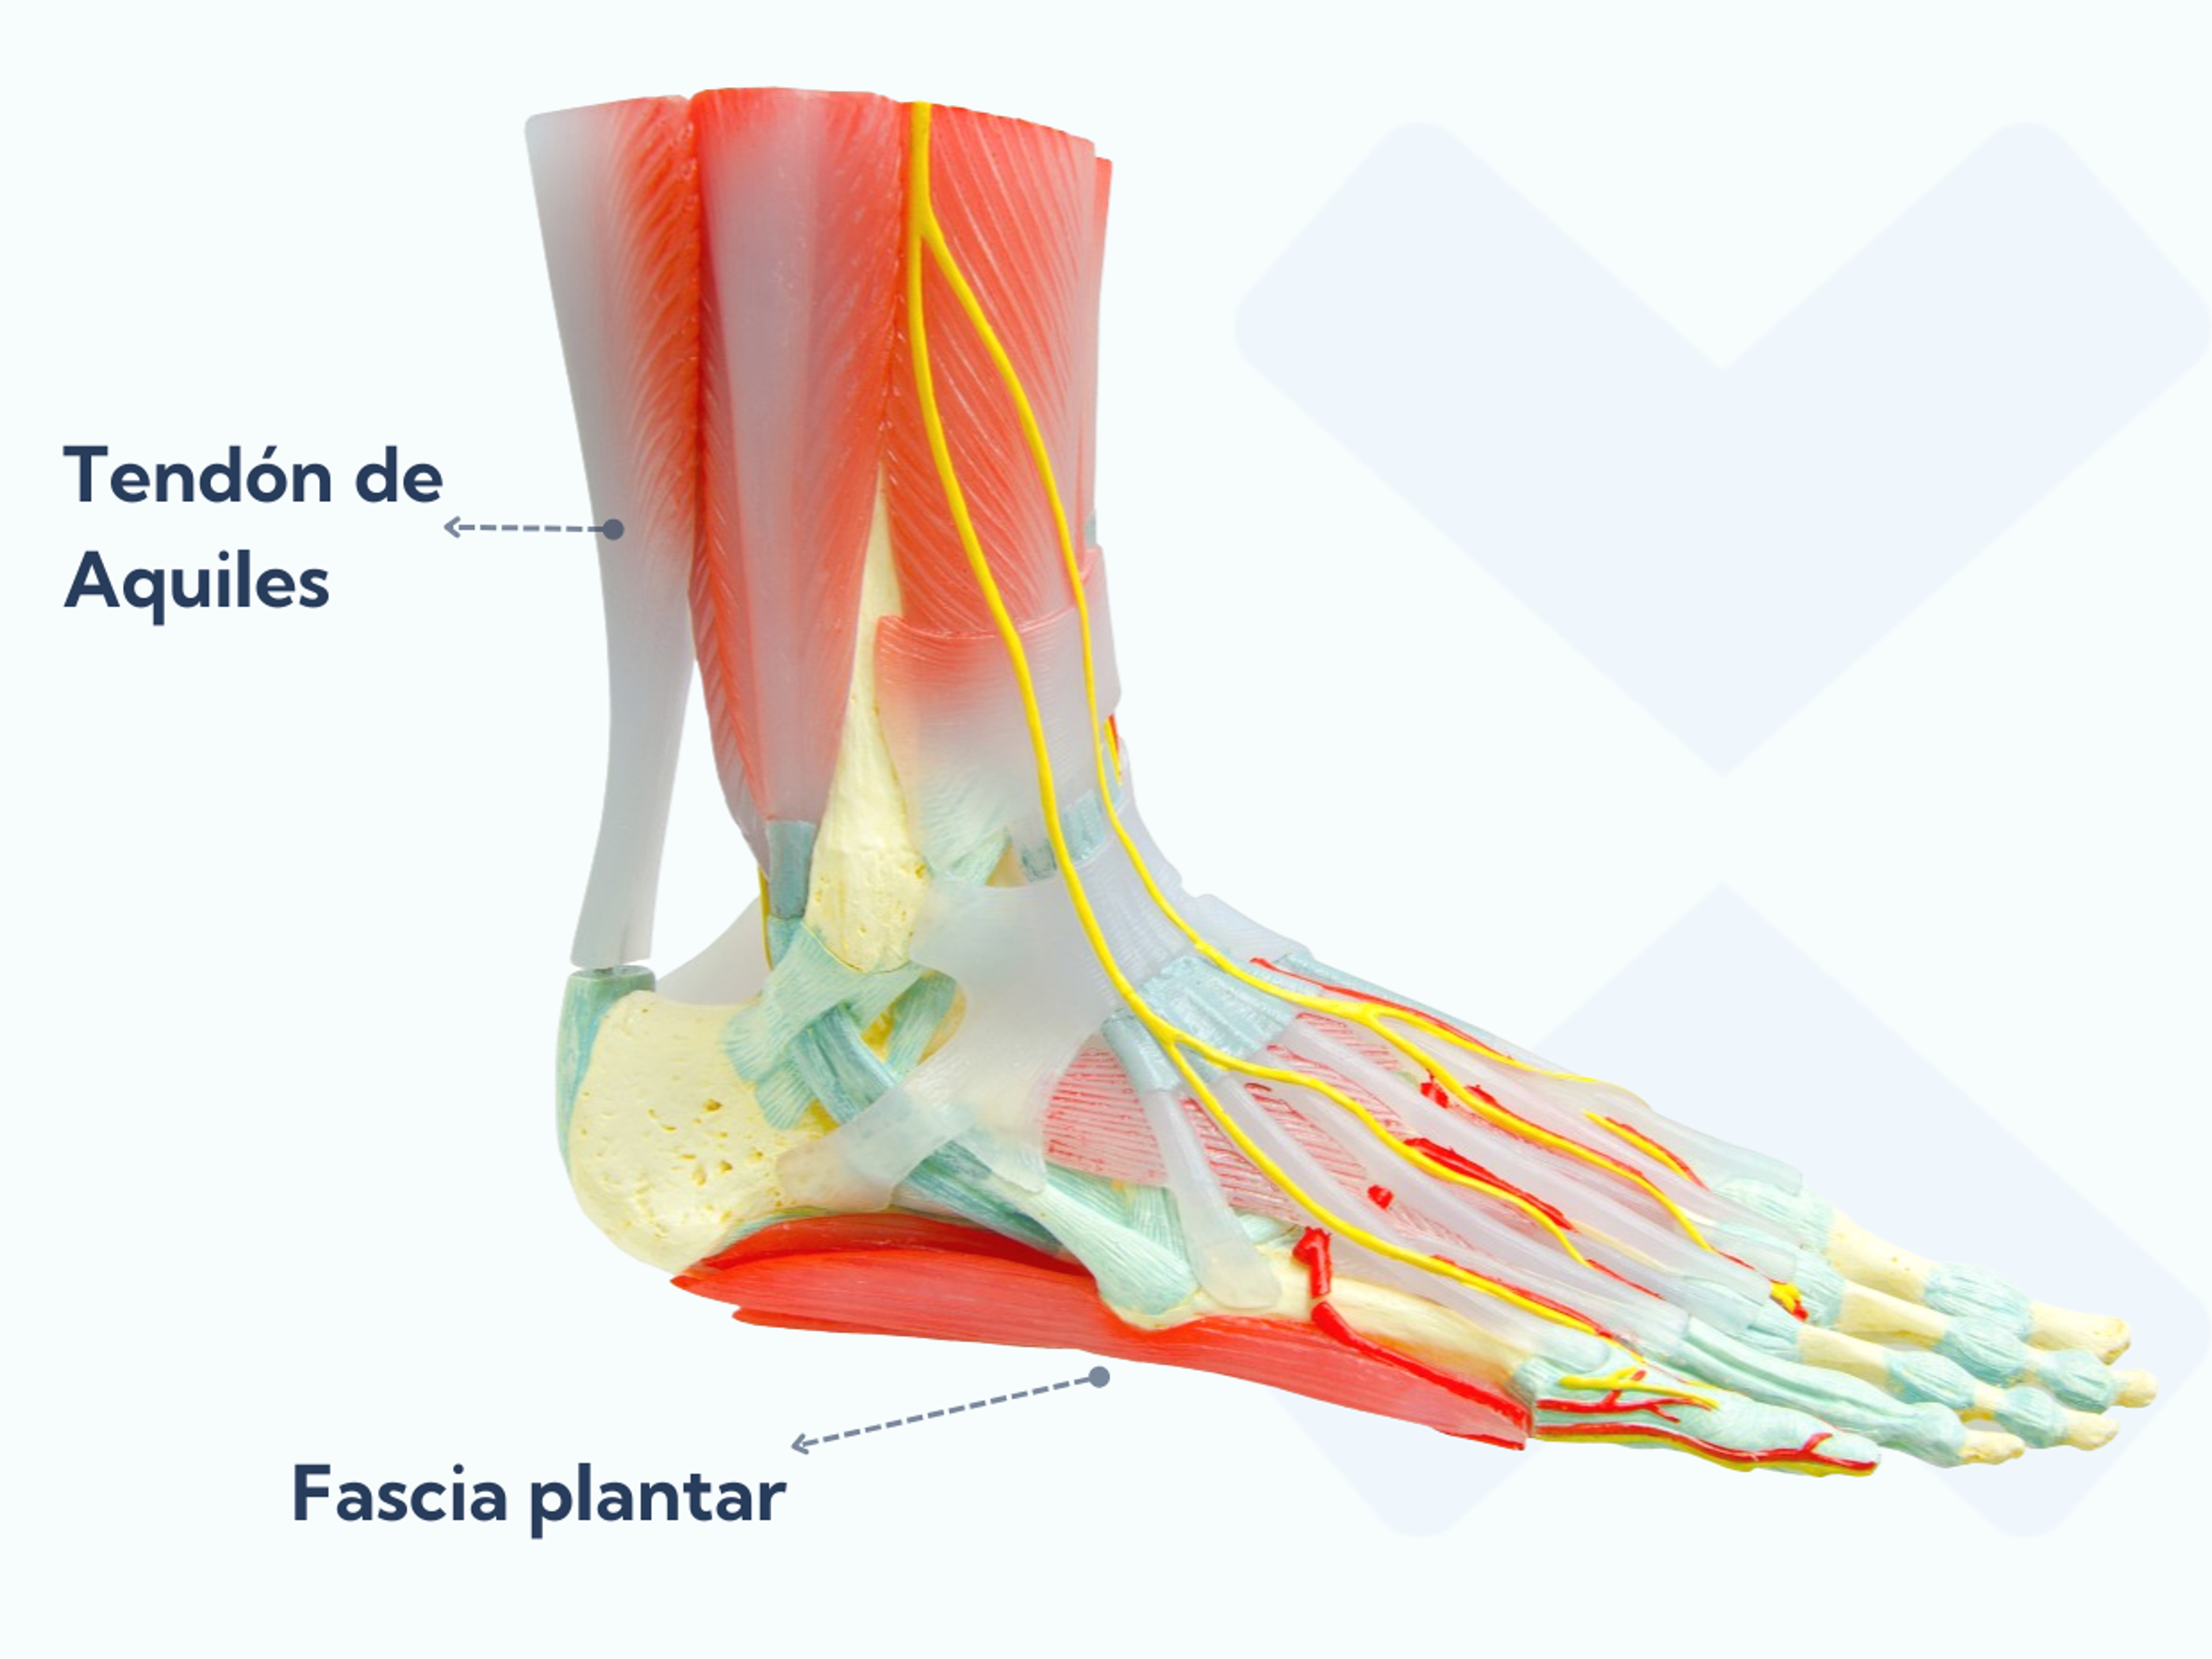 La fascia plantar va desde el hueso del talón hasta los dedos del pie y previene que el arco se colapse cuando estás en posición vertical. El tendón de Aquiles va desde los músculos de la pantorrilla y se une a la parte trasera del talón